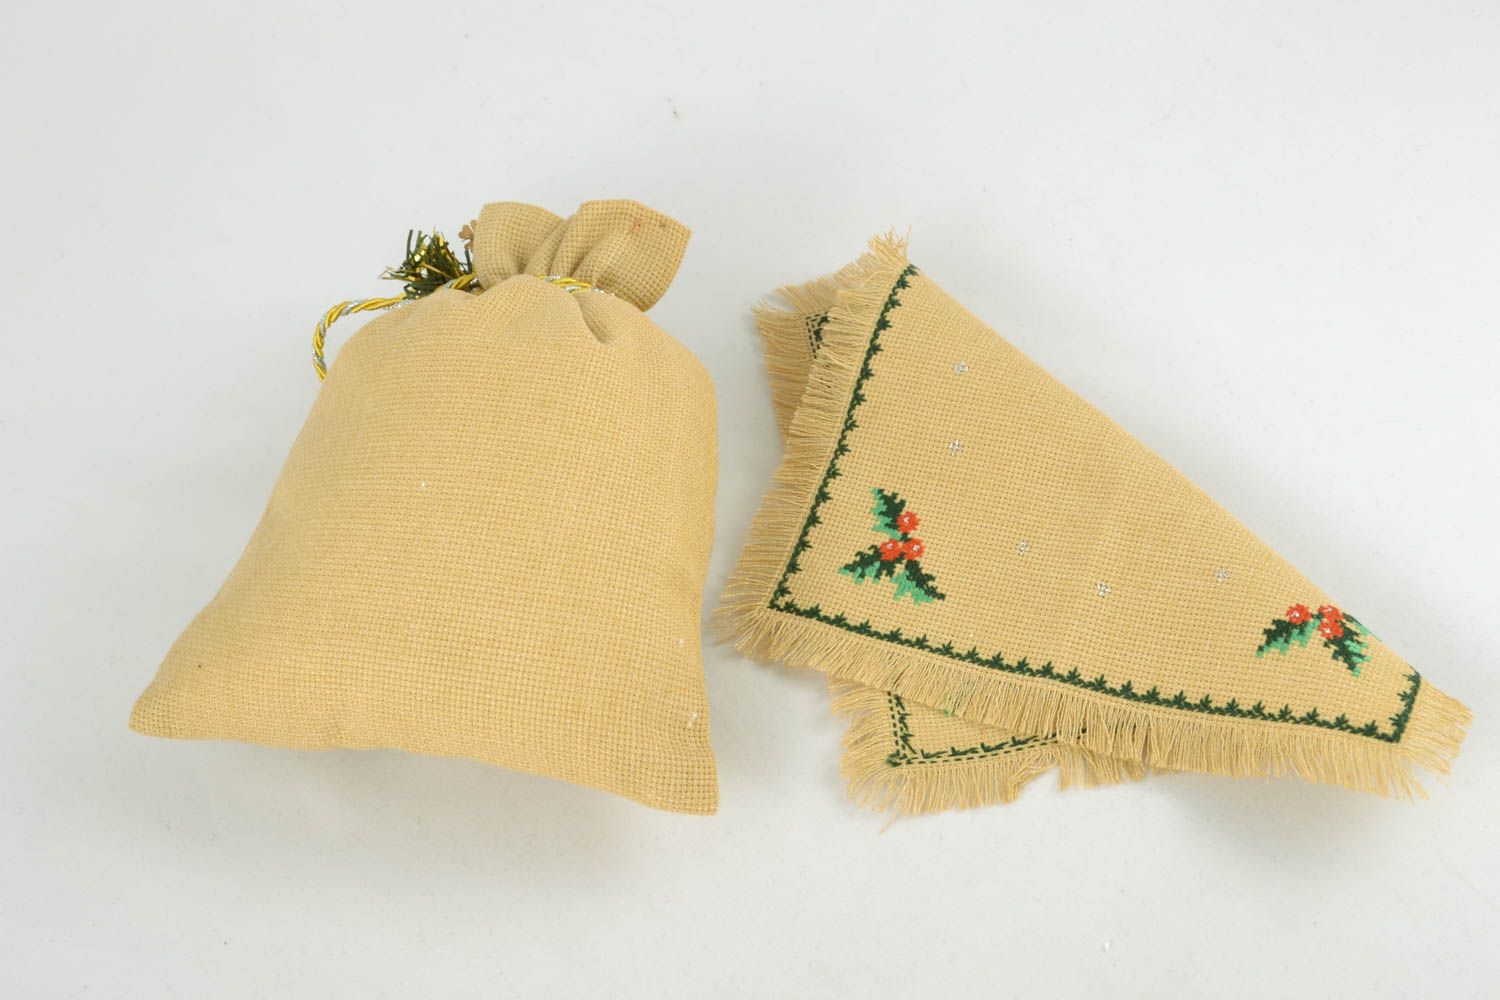 Sac de cadeau et serviette avec broderie faits main originaux design de Noël photo 1